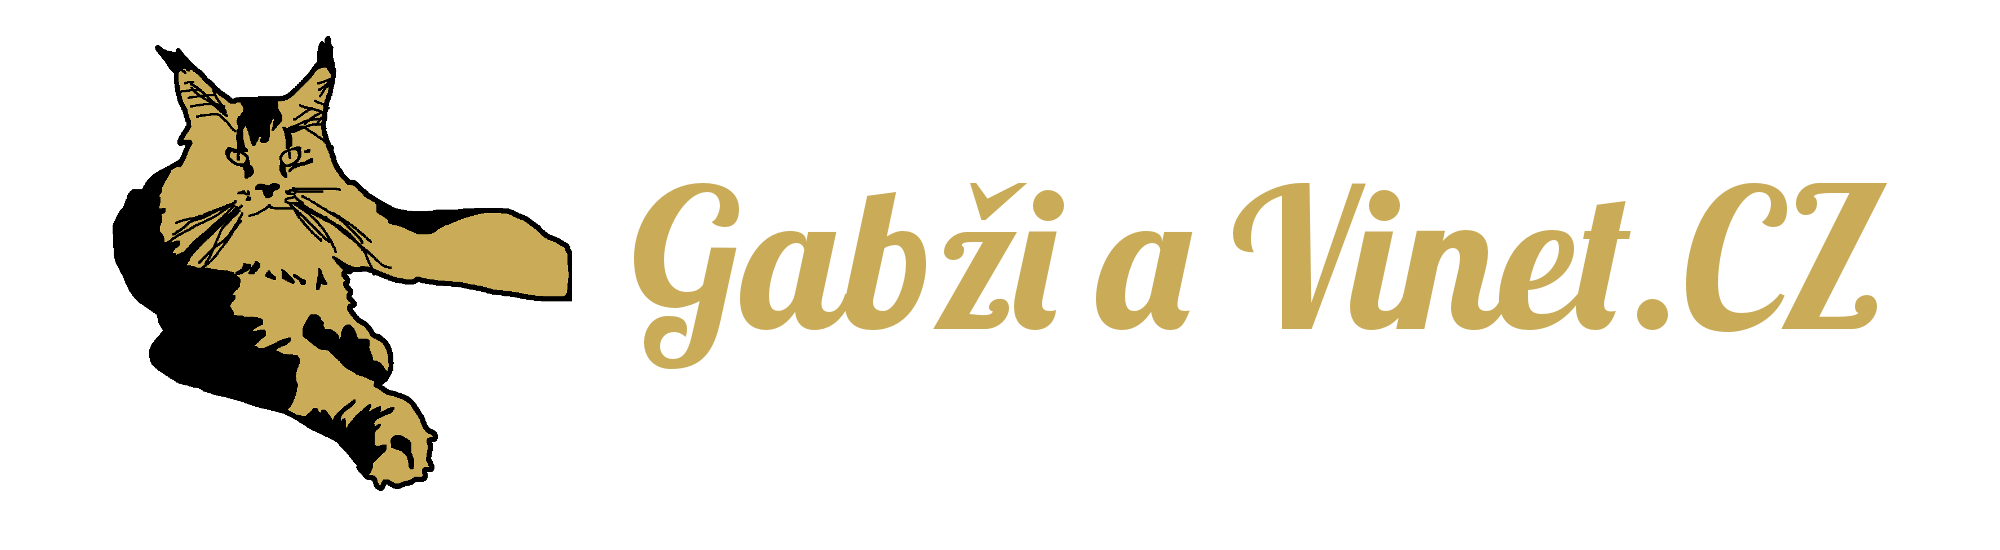 Gabži a Vinet.CZ logo